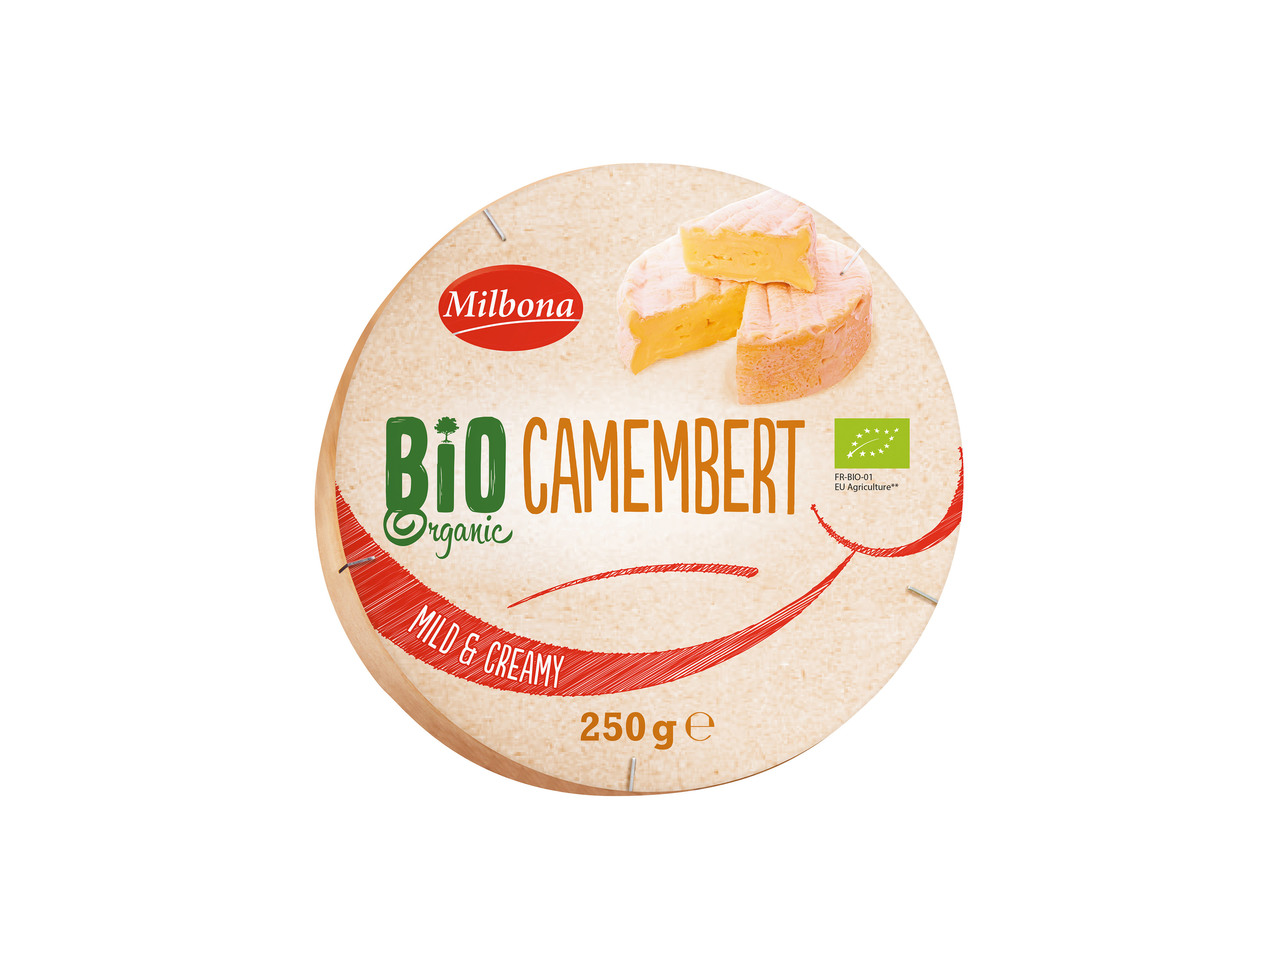 Bio Camembert